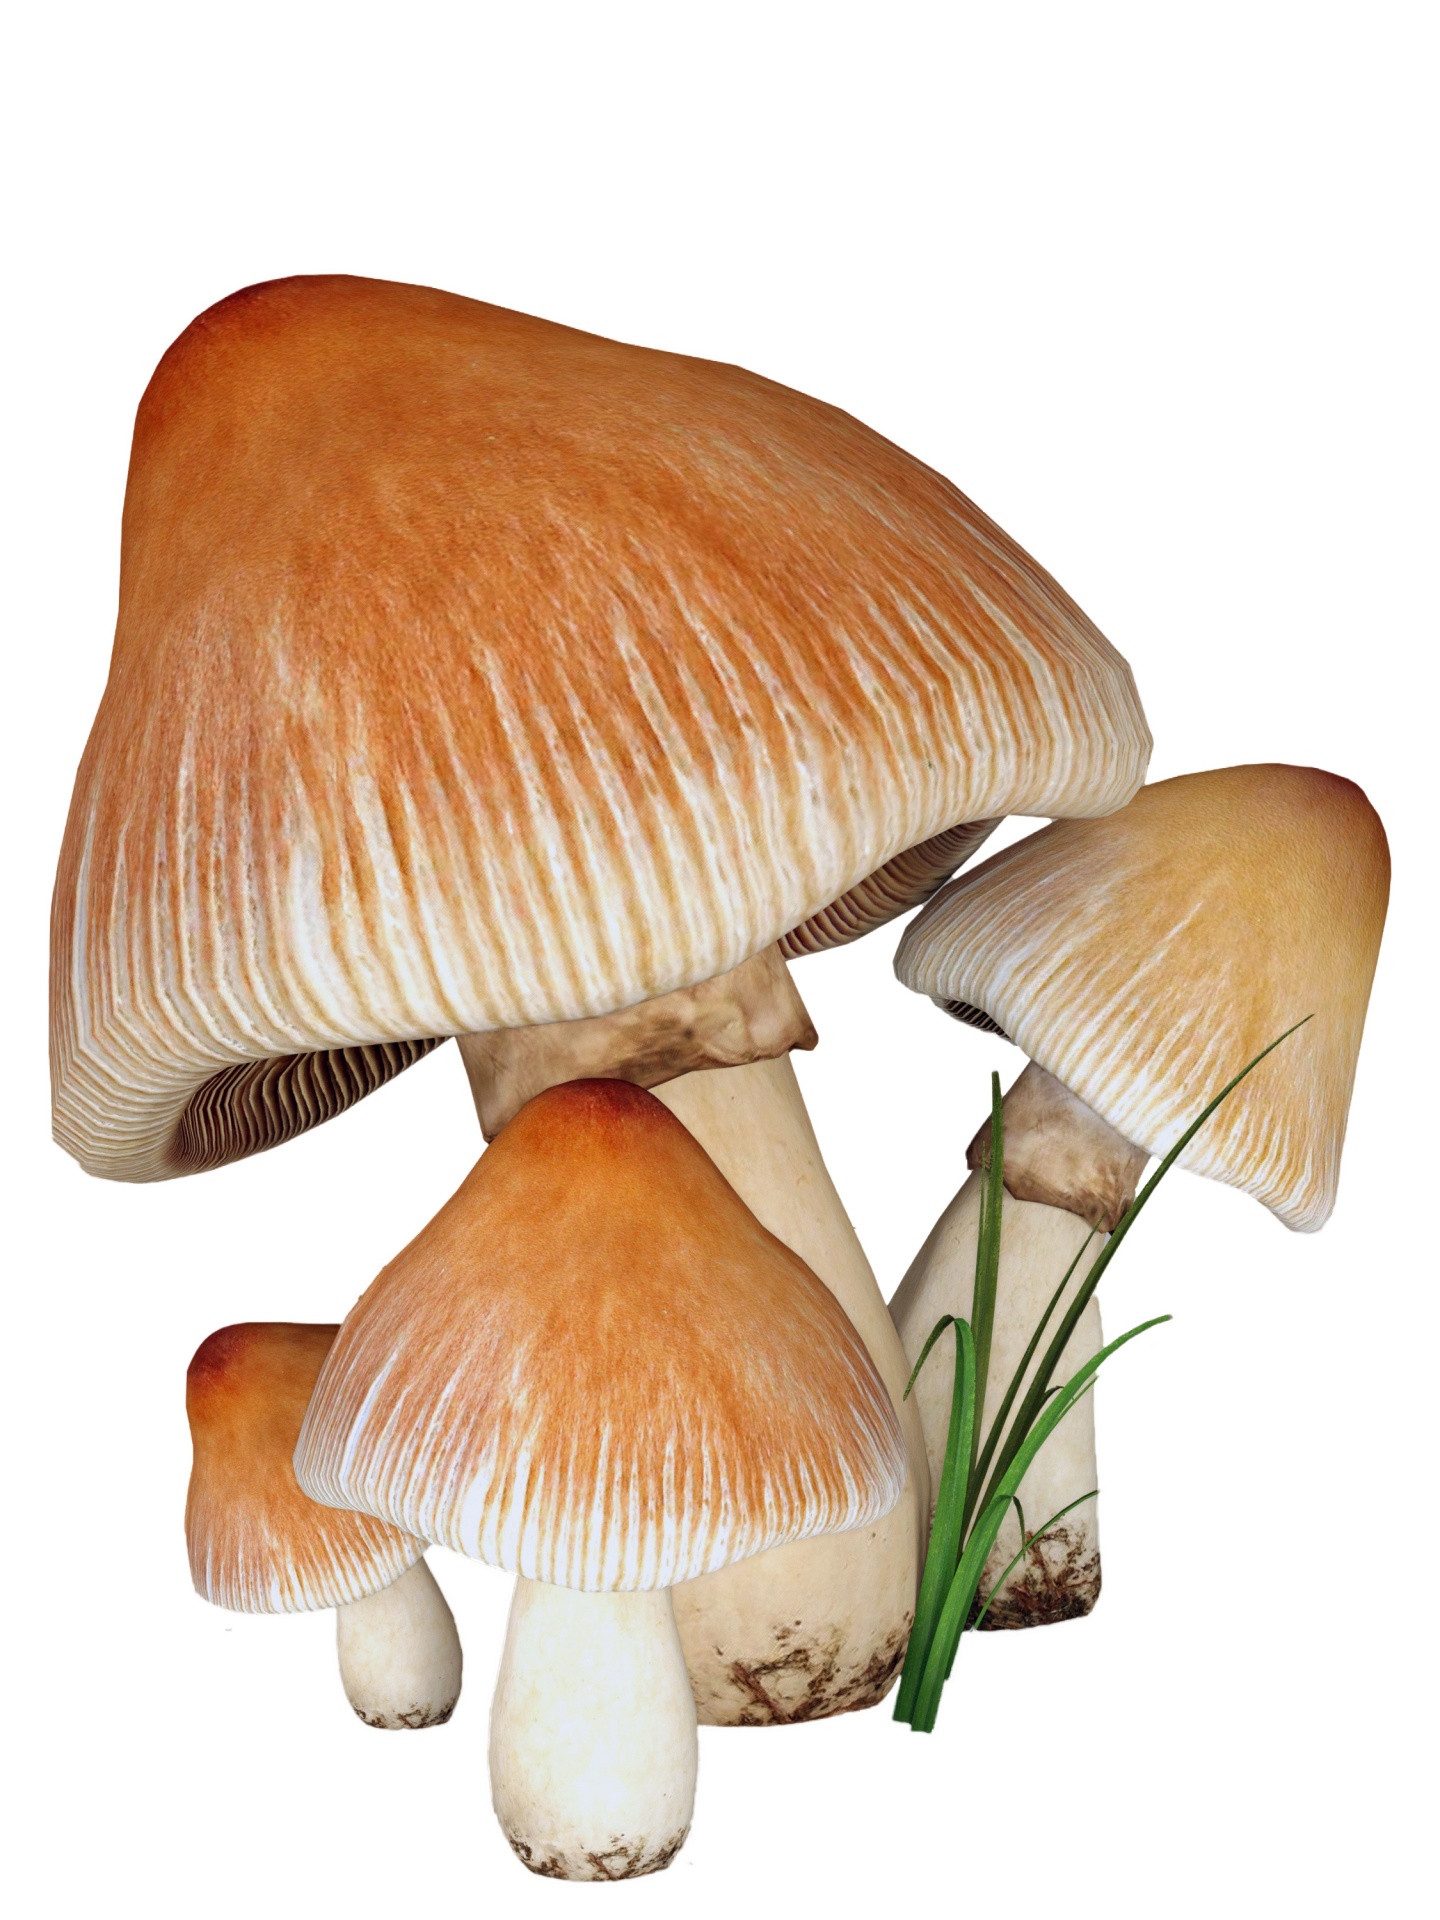 mushrooms mushroom toadstalls free photo